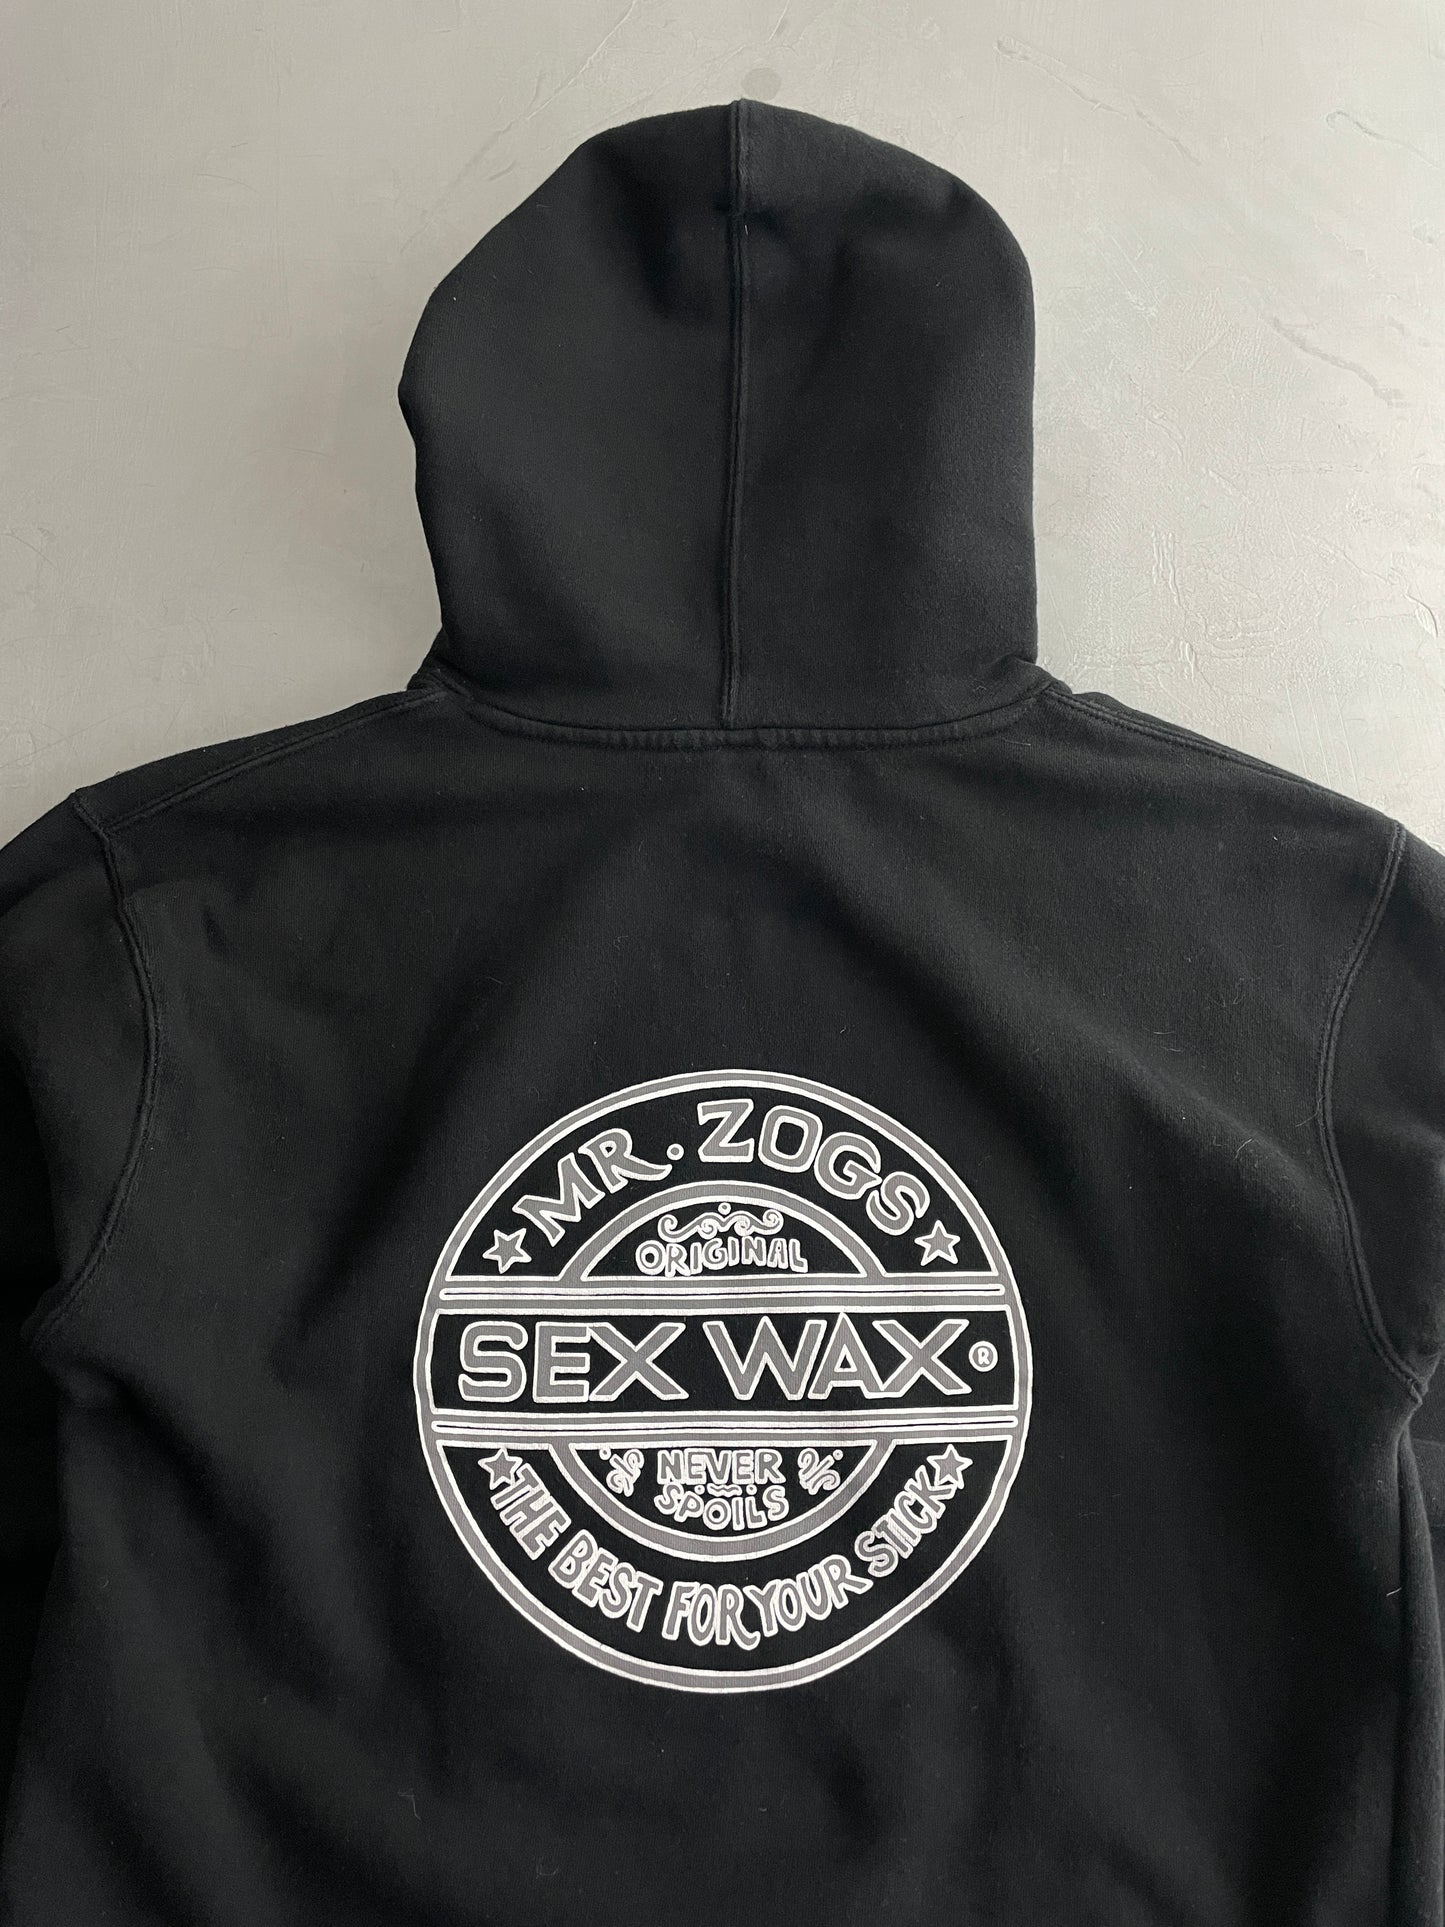 Mr.Zogs Sex Wax Hoodie [L]